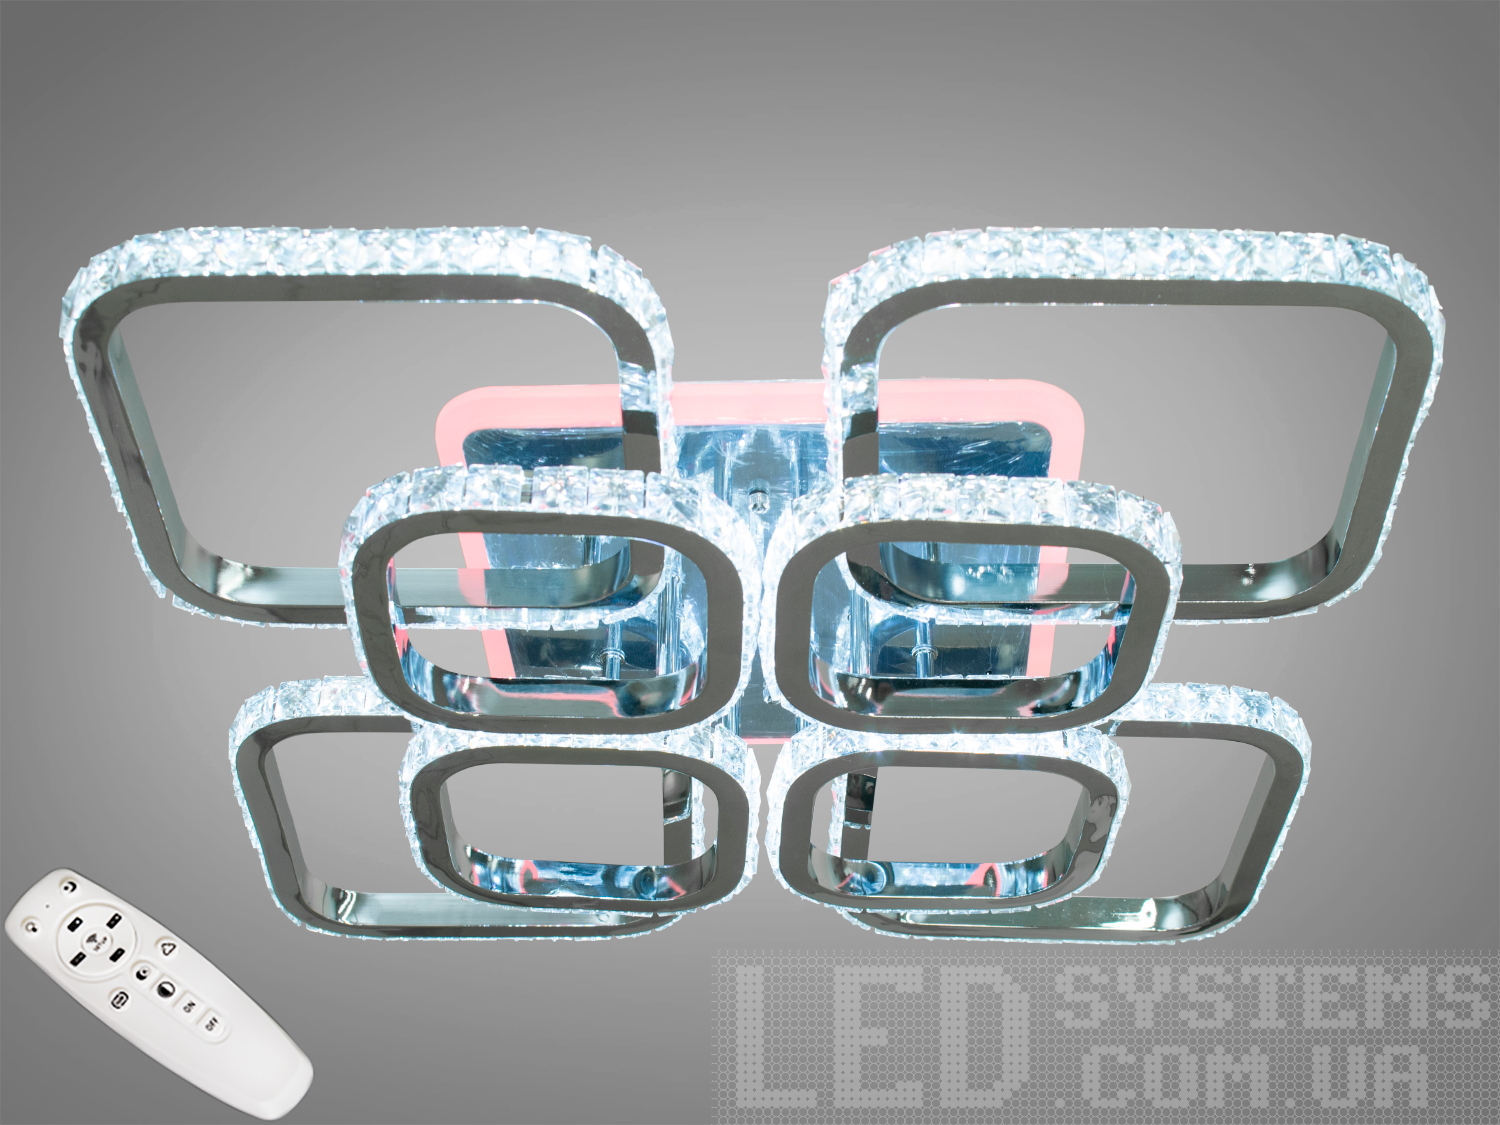 УЦІНКА! Кришталева LED-люстра з підсвічуванням, 160WХрустальные светодиодные люстры, Потолочные люстры, Светодиодные люстры, Люстры LED, Потолочные